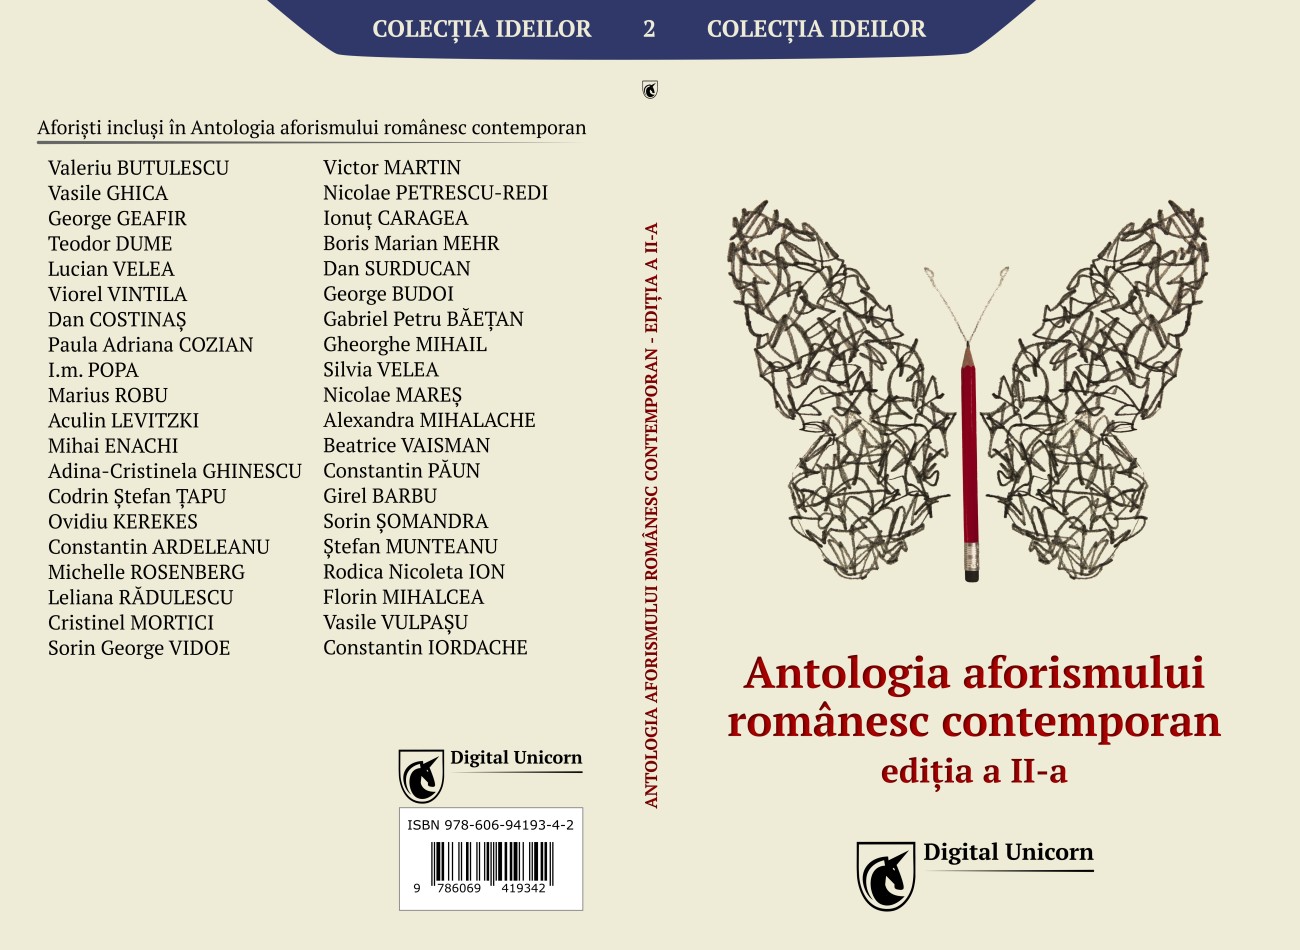 Antologia aforismului romanesc contemporan - coperta 1300x950